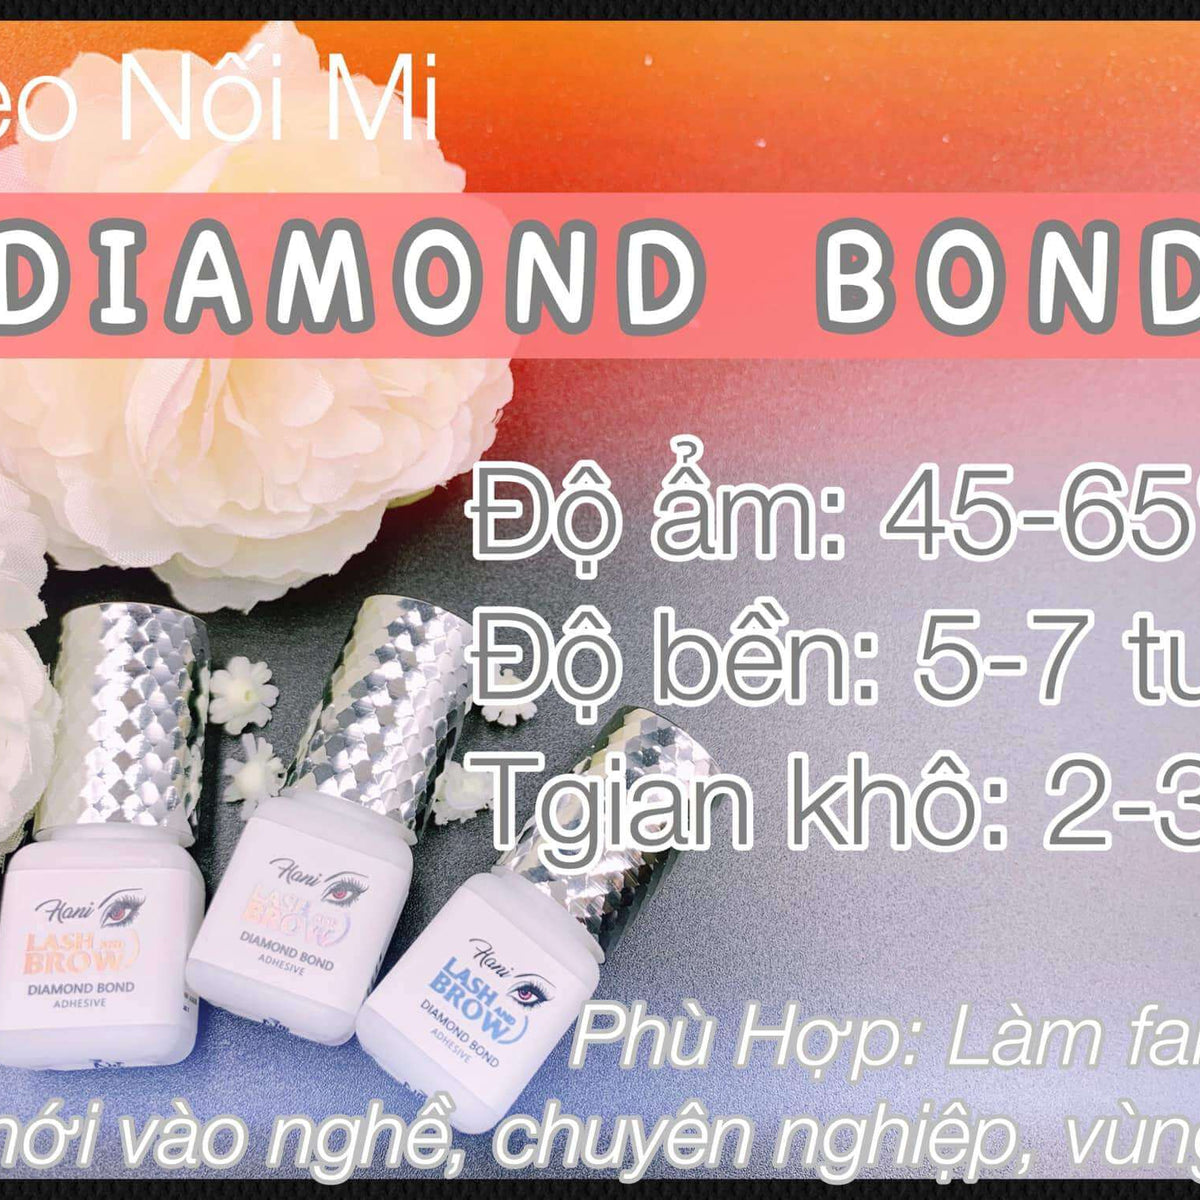 Diamond Bond Adhesive